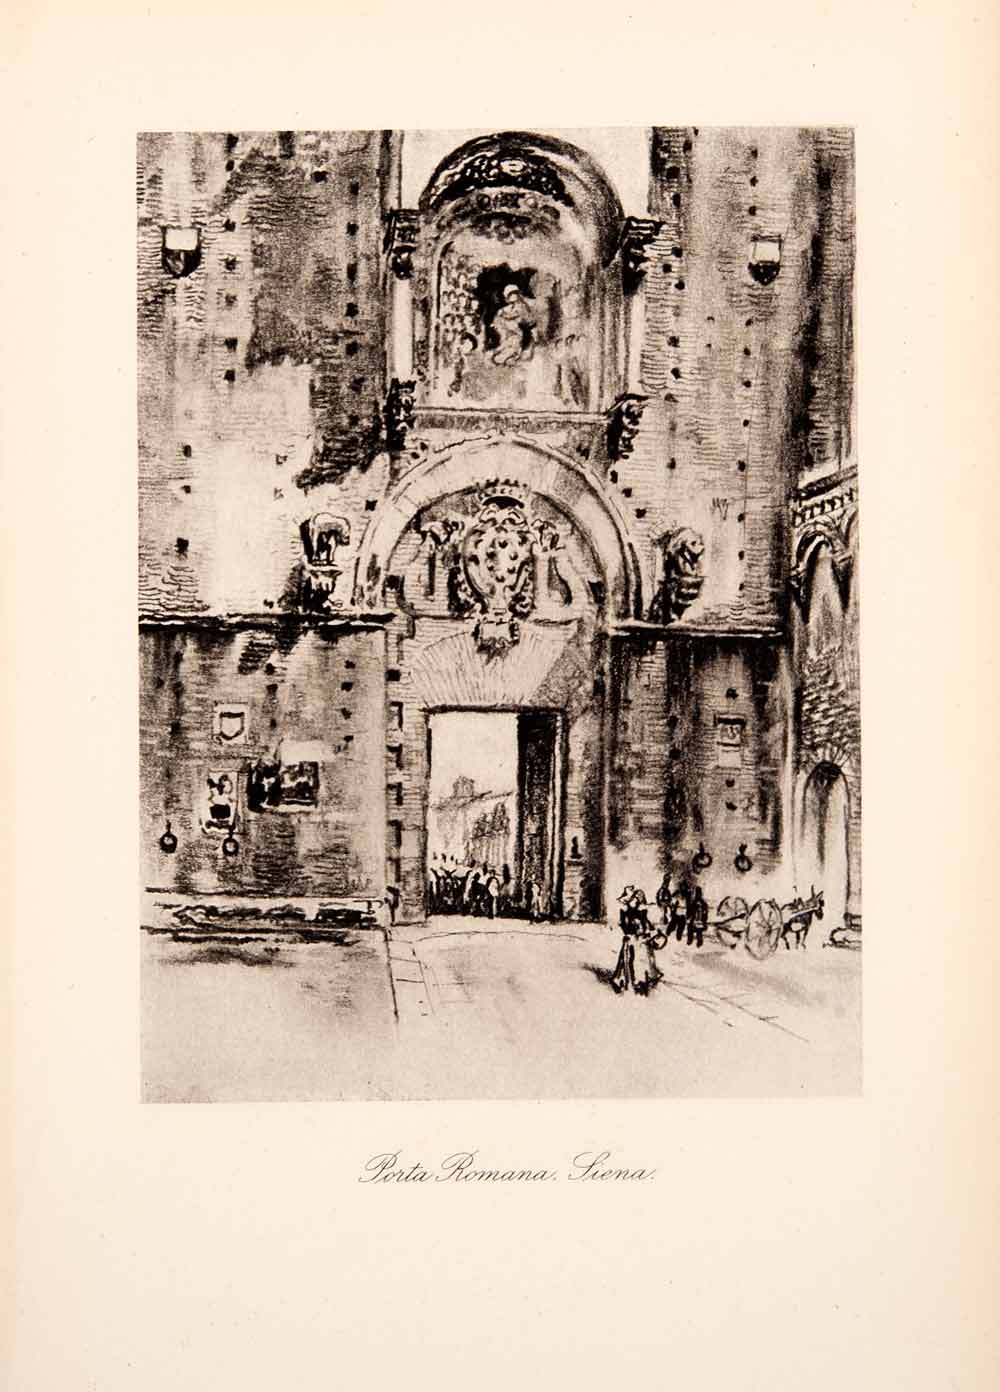 1904 Photogravure Porta Romana Siena Tuscany City Gate Wall Joseph Pennell XGWA4